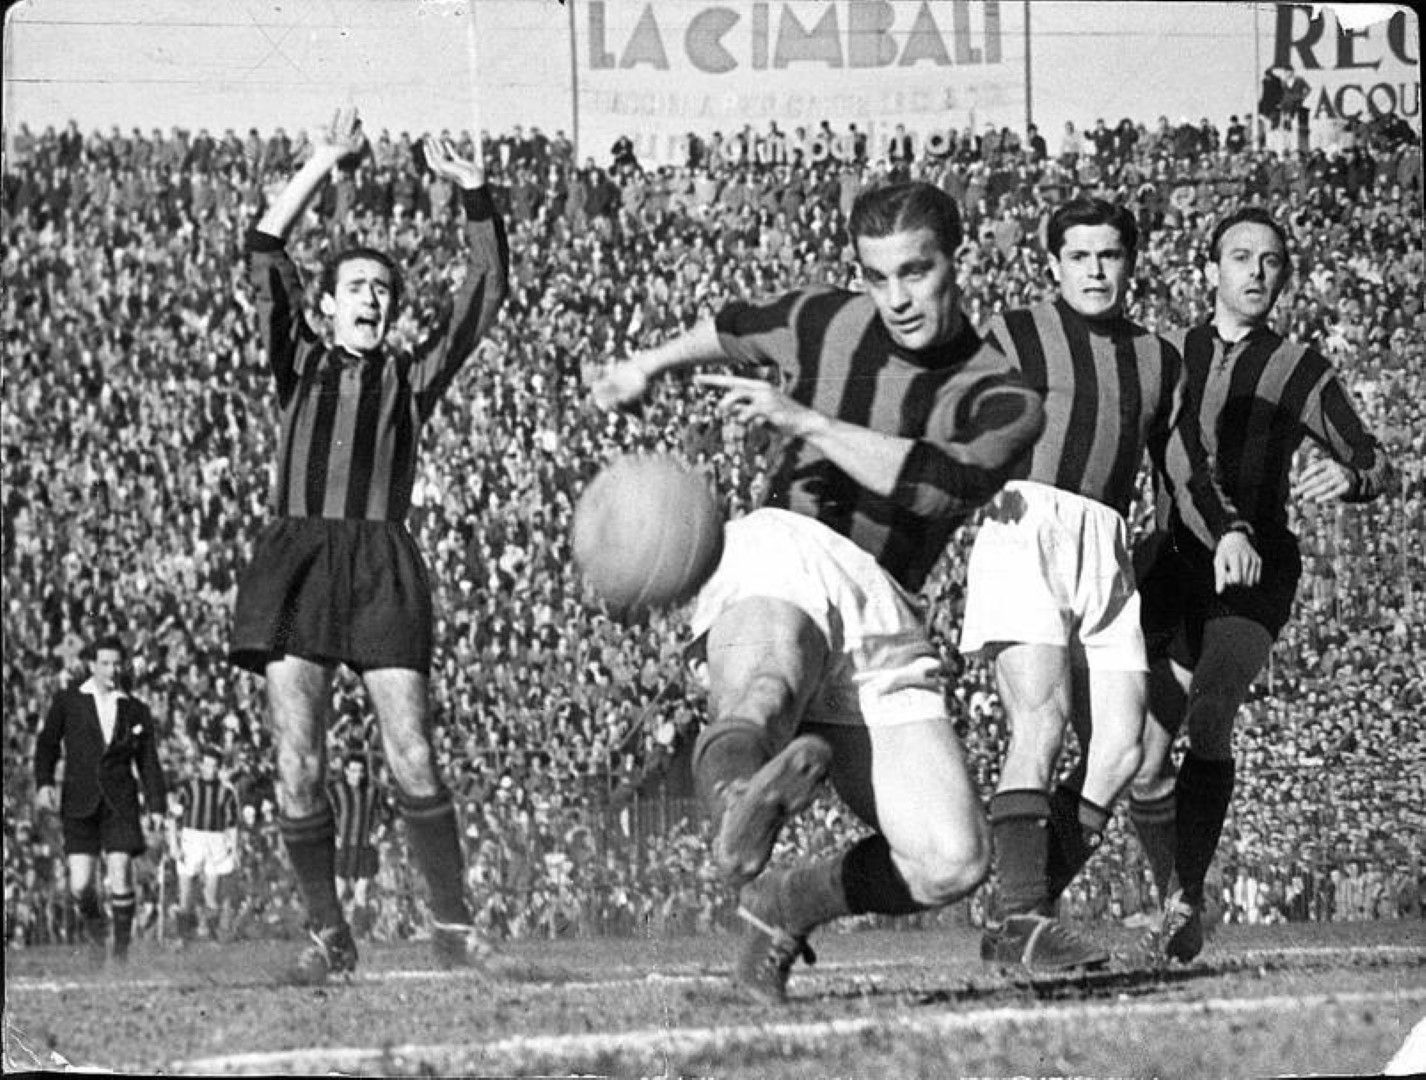 24, Гунар Нордал е "Но"-то в триото Гре-Но-Ли, което се вихри в шведския национален отбор и Милан през 50-те години. Вкарва общо 513 гола в кариерата си, като е пет пъти стрелец №1 на Серия А - повече от всеки друг в историята. Бе нападателят с най-много попадения за един италиански клуб, преди Франческо Тоти да го надмине и да остане номер 2. 